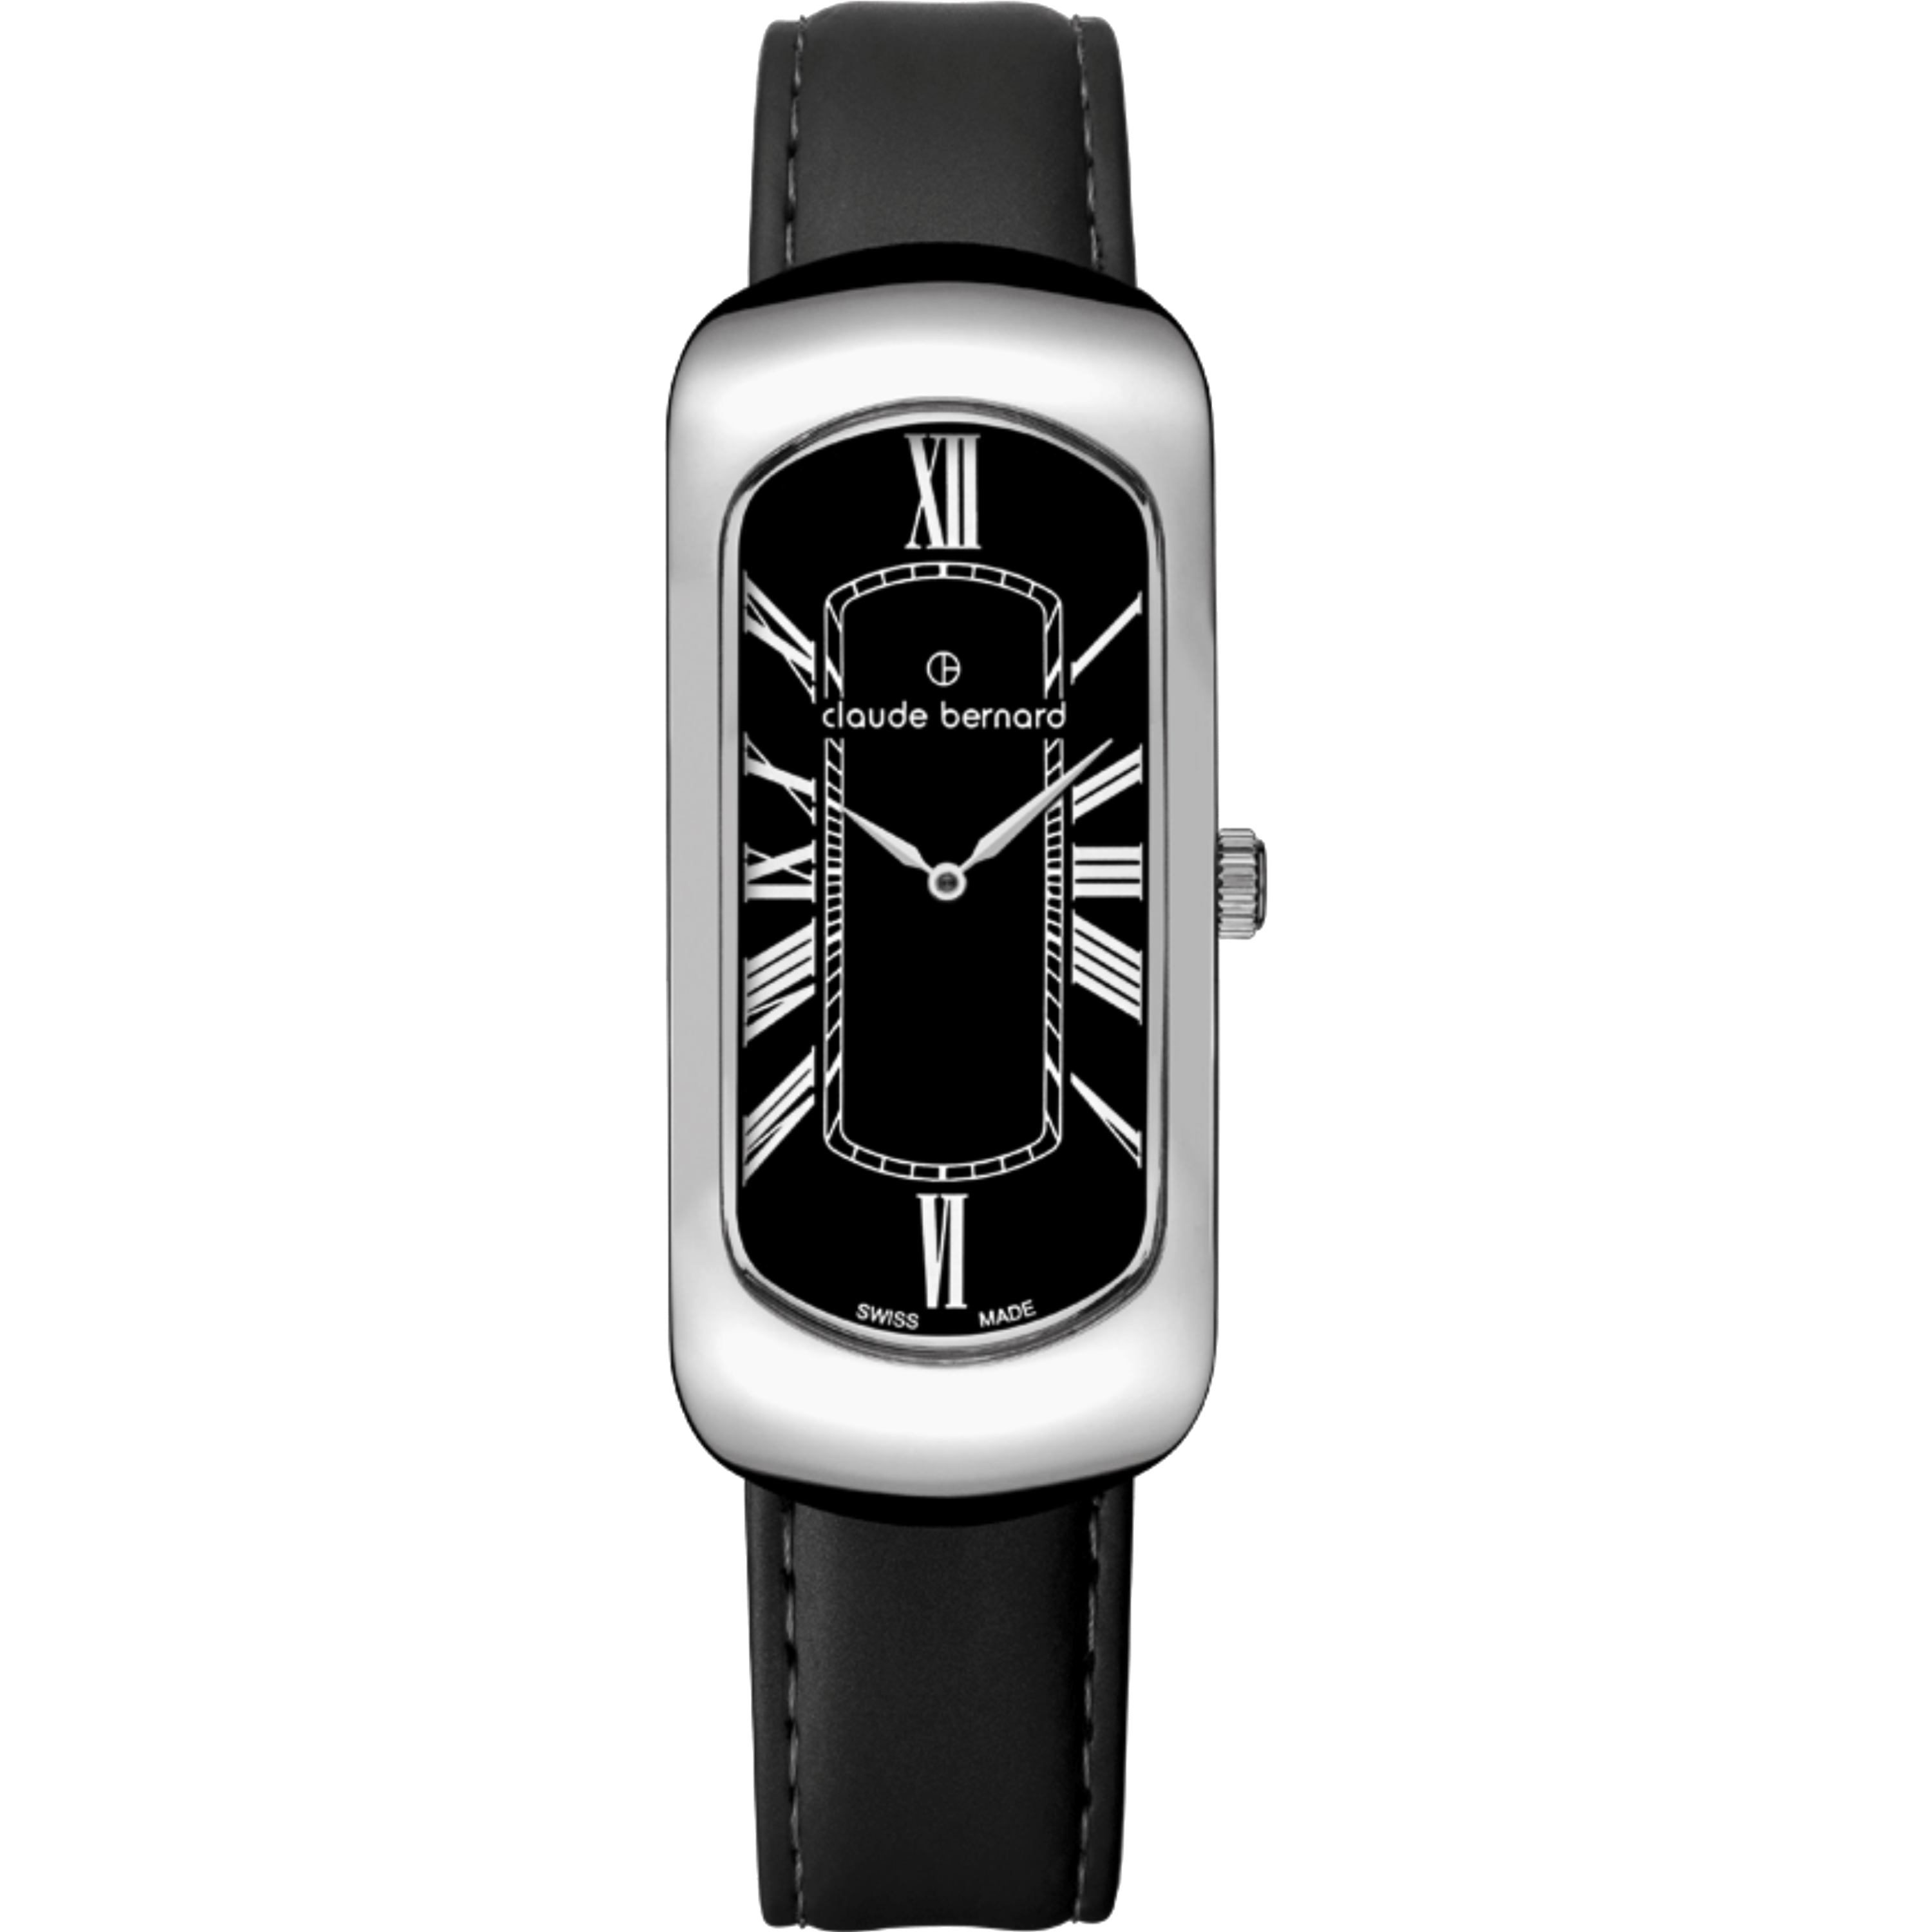 שעון יד לאישה Claude Bernard 20227 3 NR 20mm צבע שחור/ספיר קריסטל - אחריות לשנה ע"י היבואן